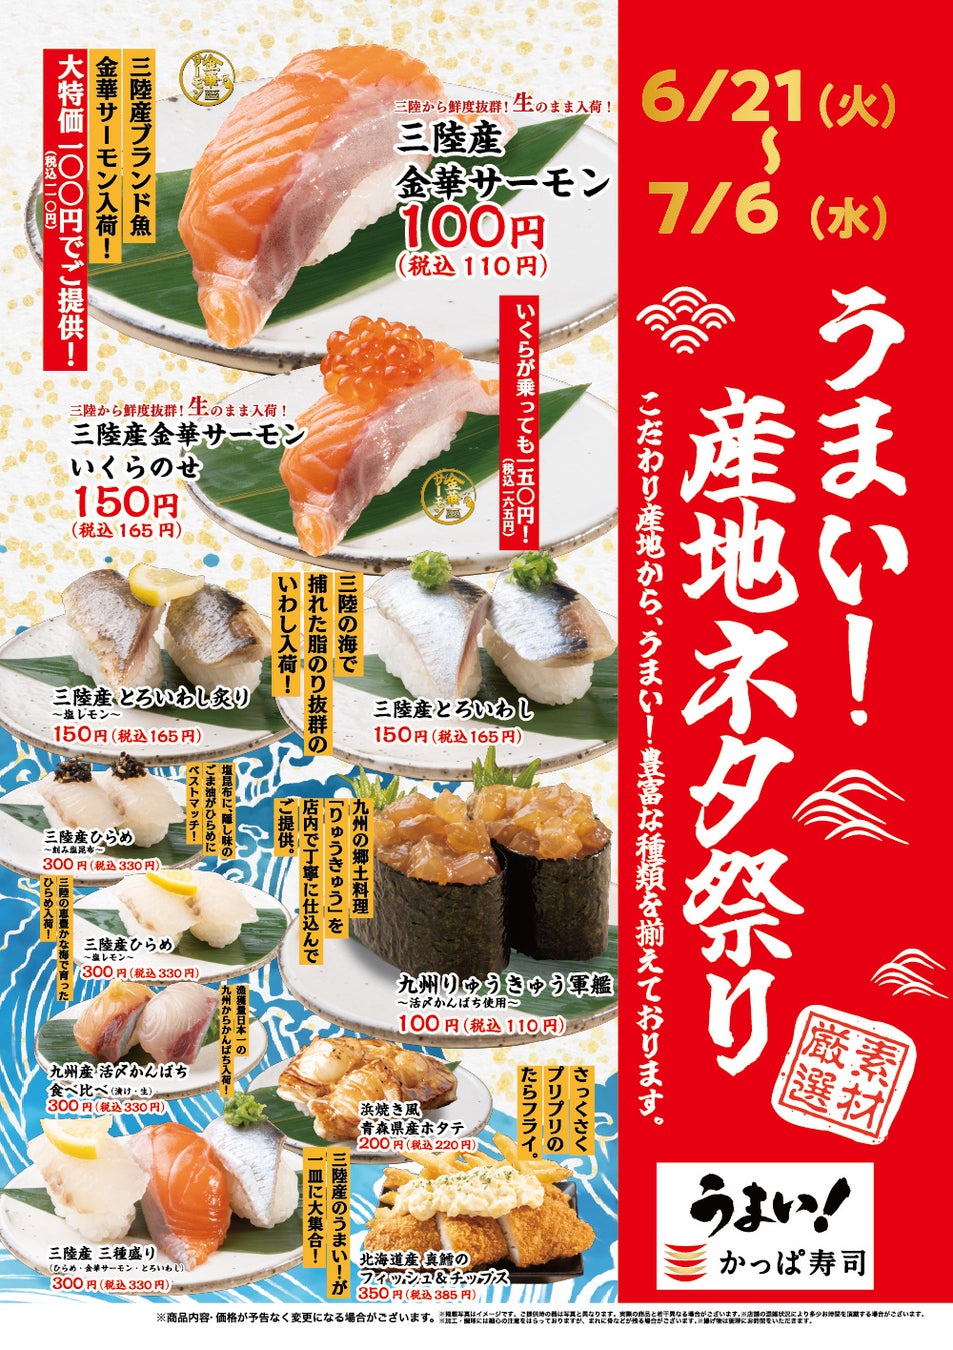 かっぱ寿司「名店レシピ」第3弾 始動　名店「鮓 きずな」の知恵と技が光る 大阪の文化「押し寿司」「蒸し寿司」が登場